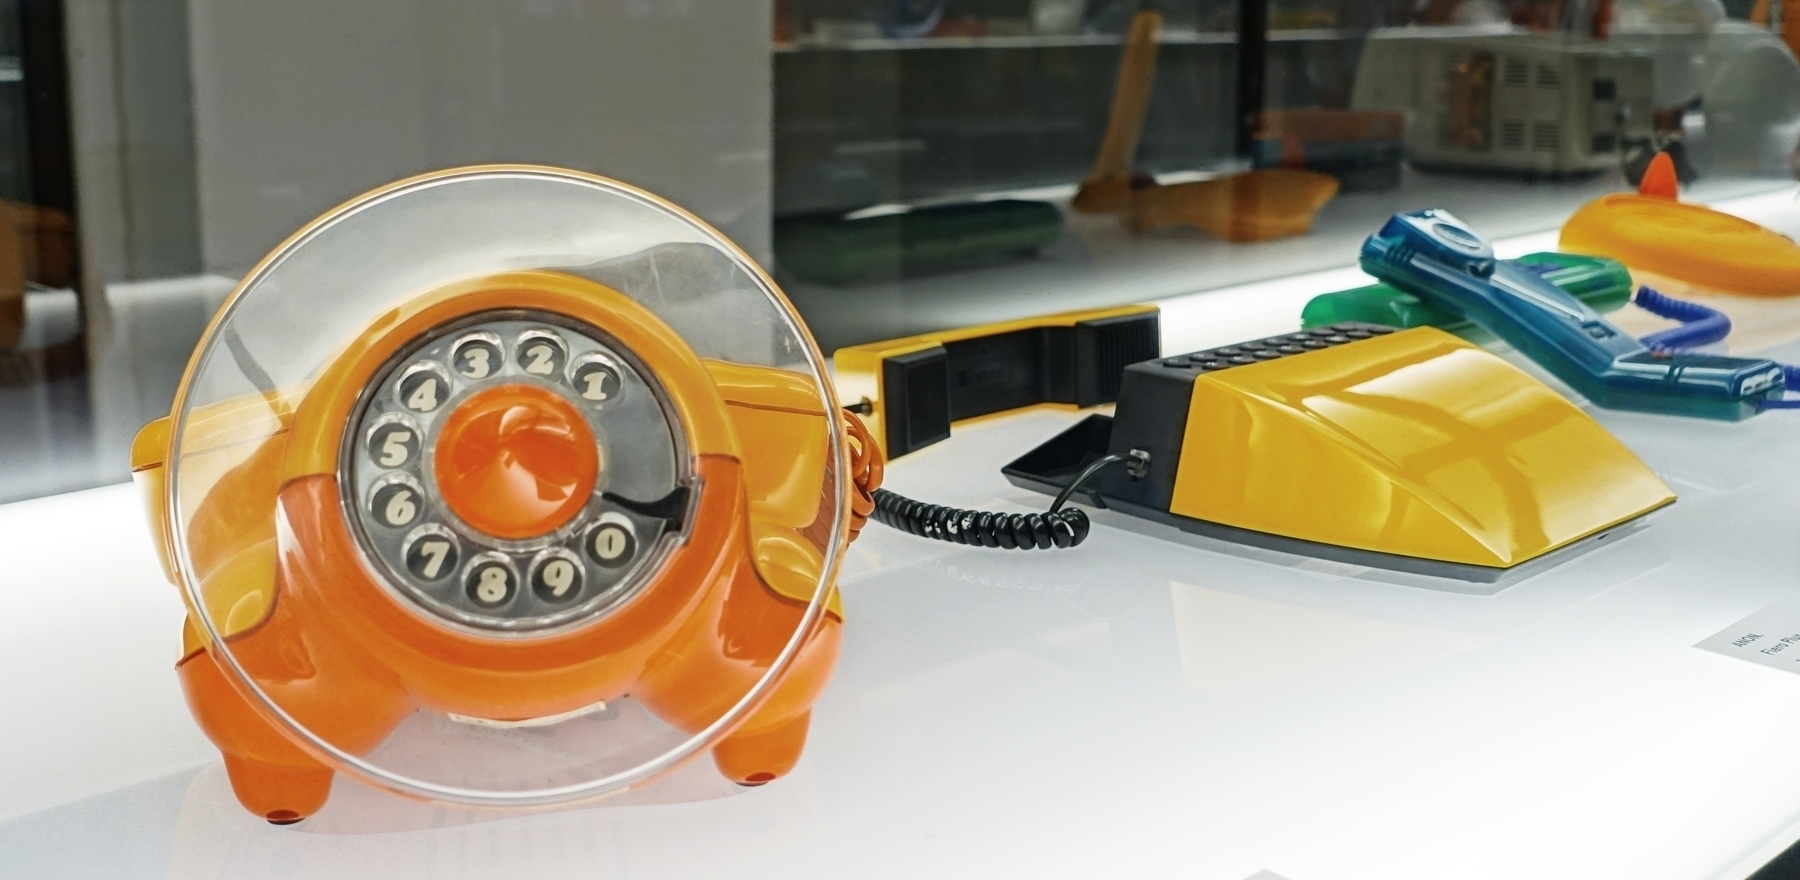 plastic felgekleurde telefoons,  de voorste was in de vorm van een soort vliegtuig 